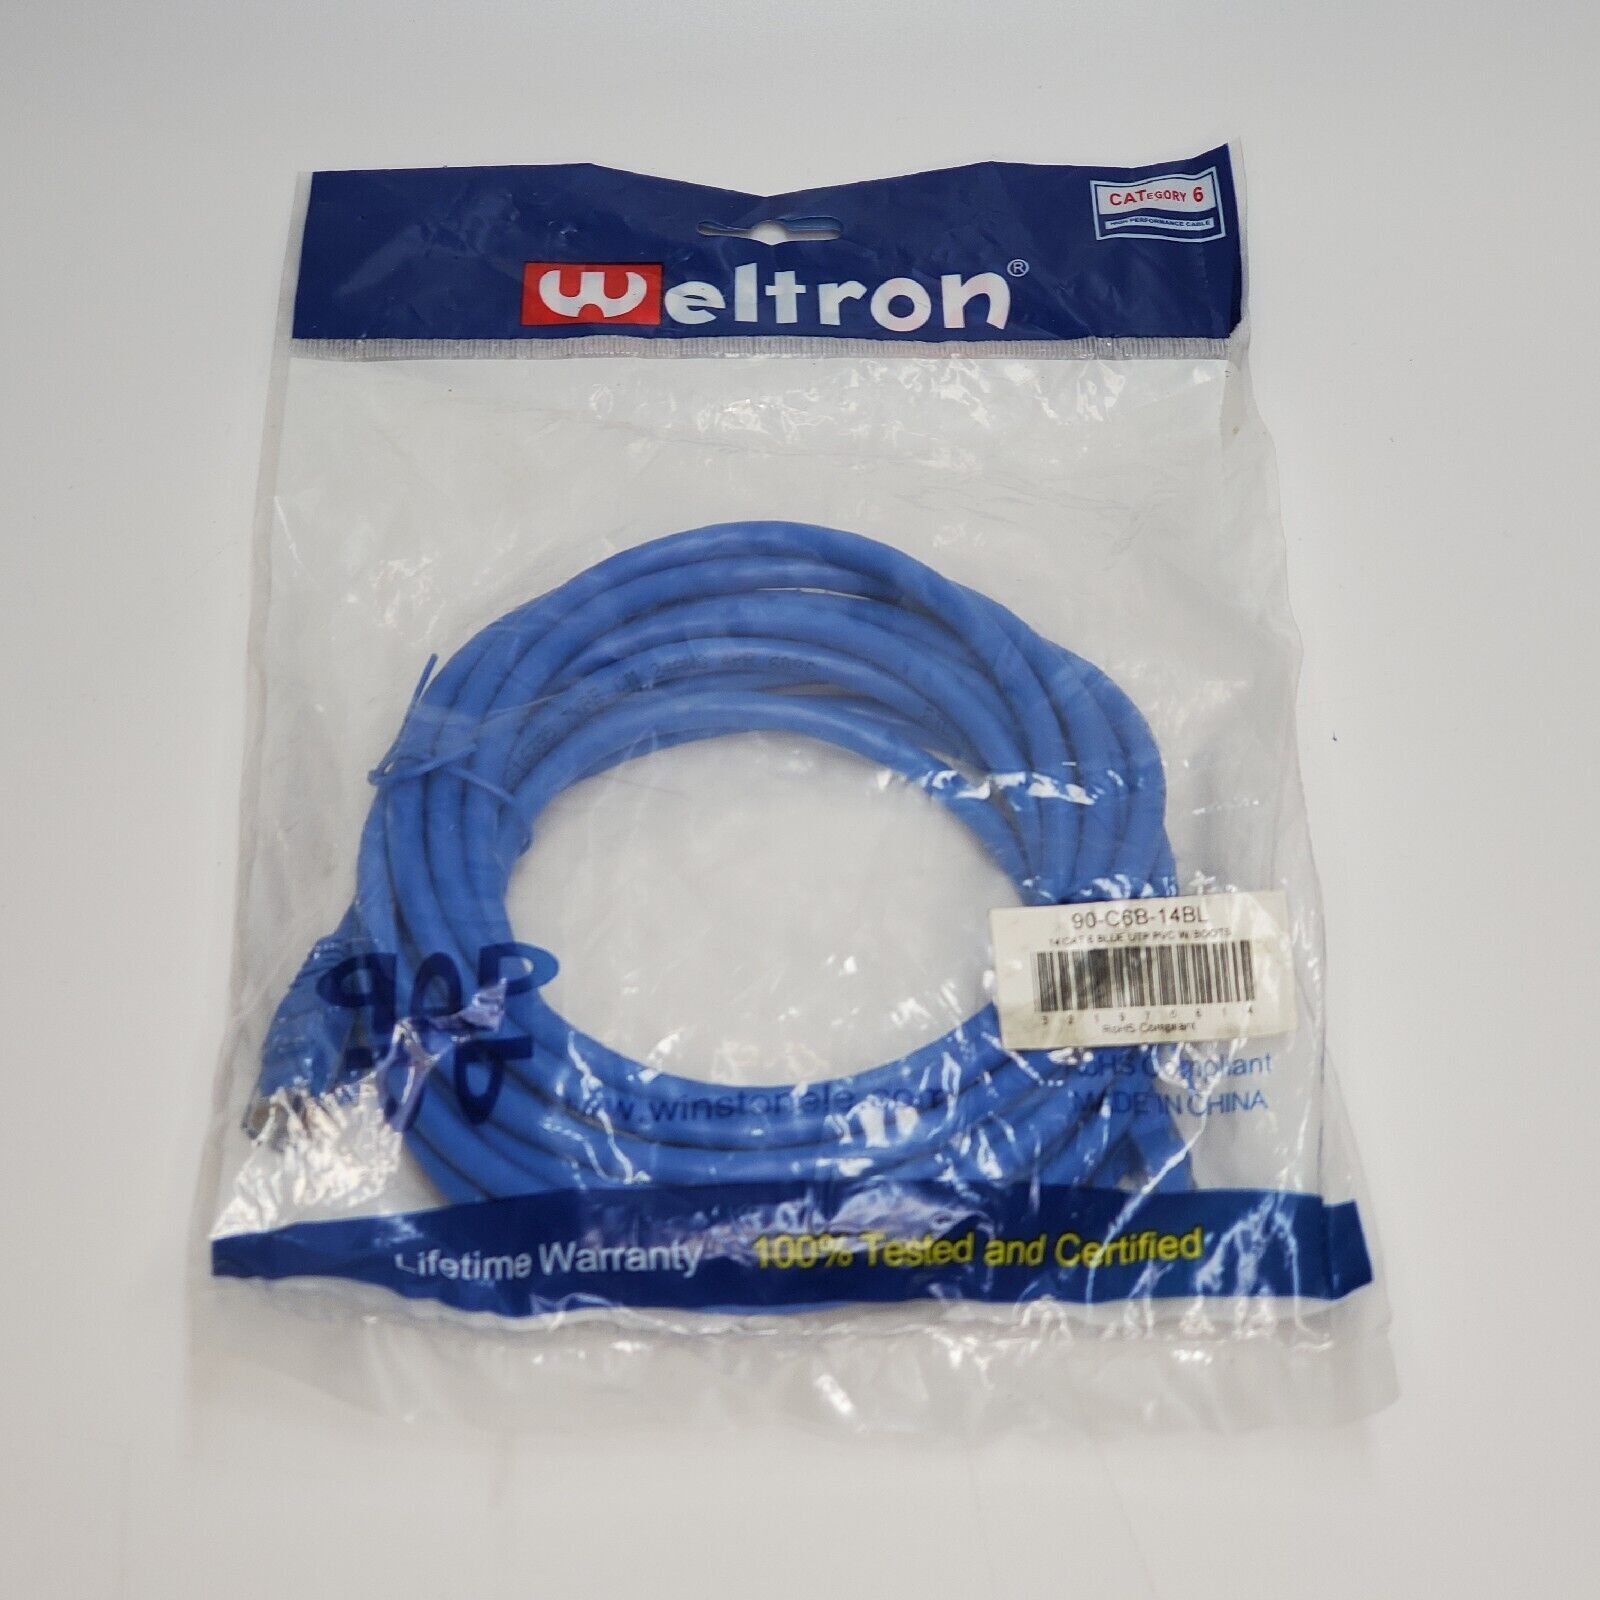 Weltron 14ft Cat 6 Blue UTP PVC W/Boots Patch Cable RoHS Compliant